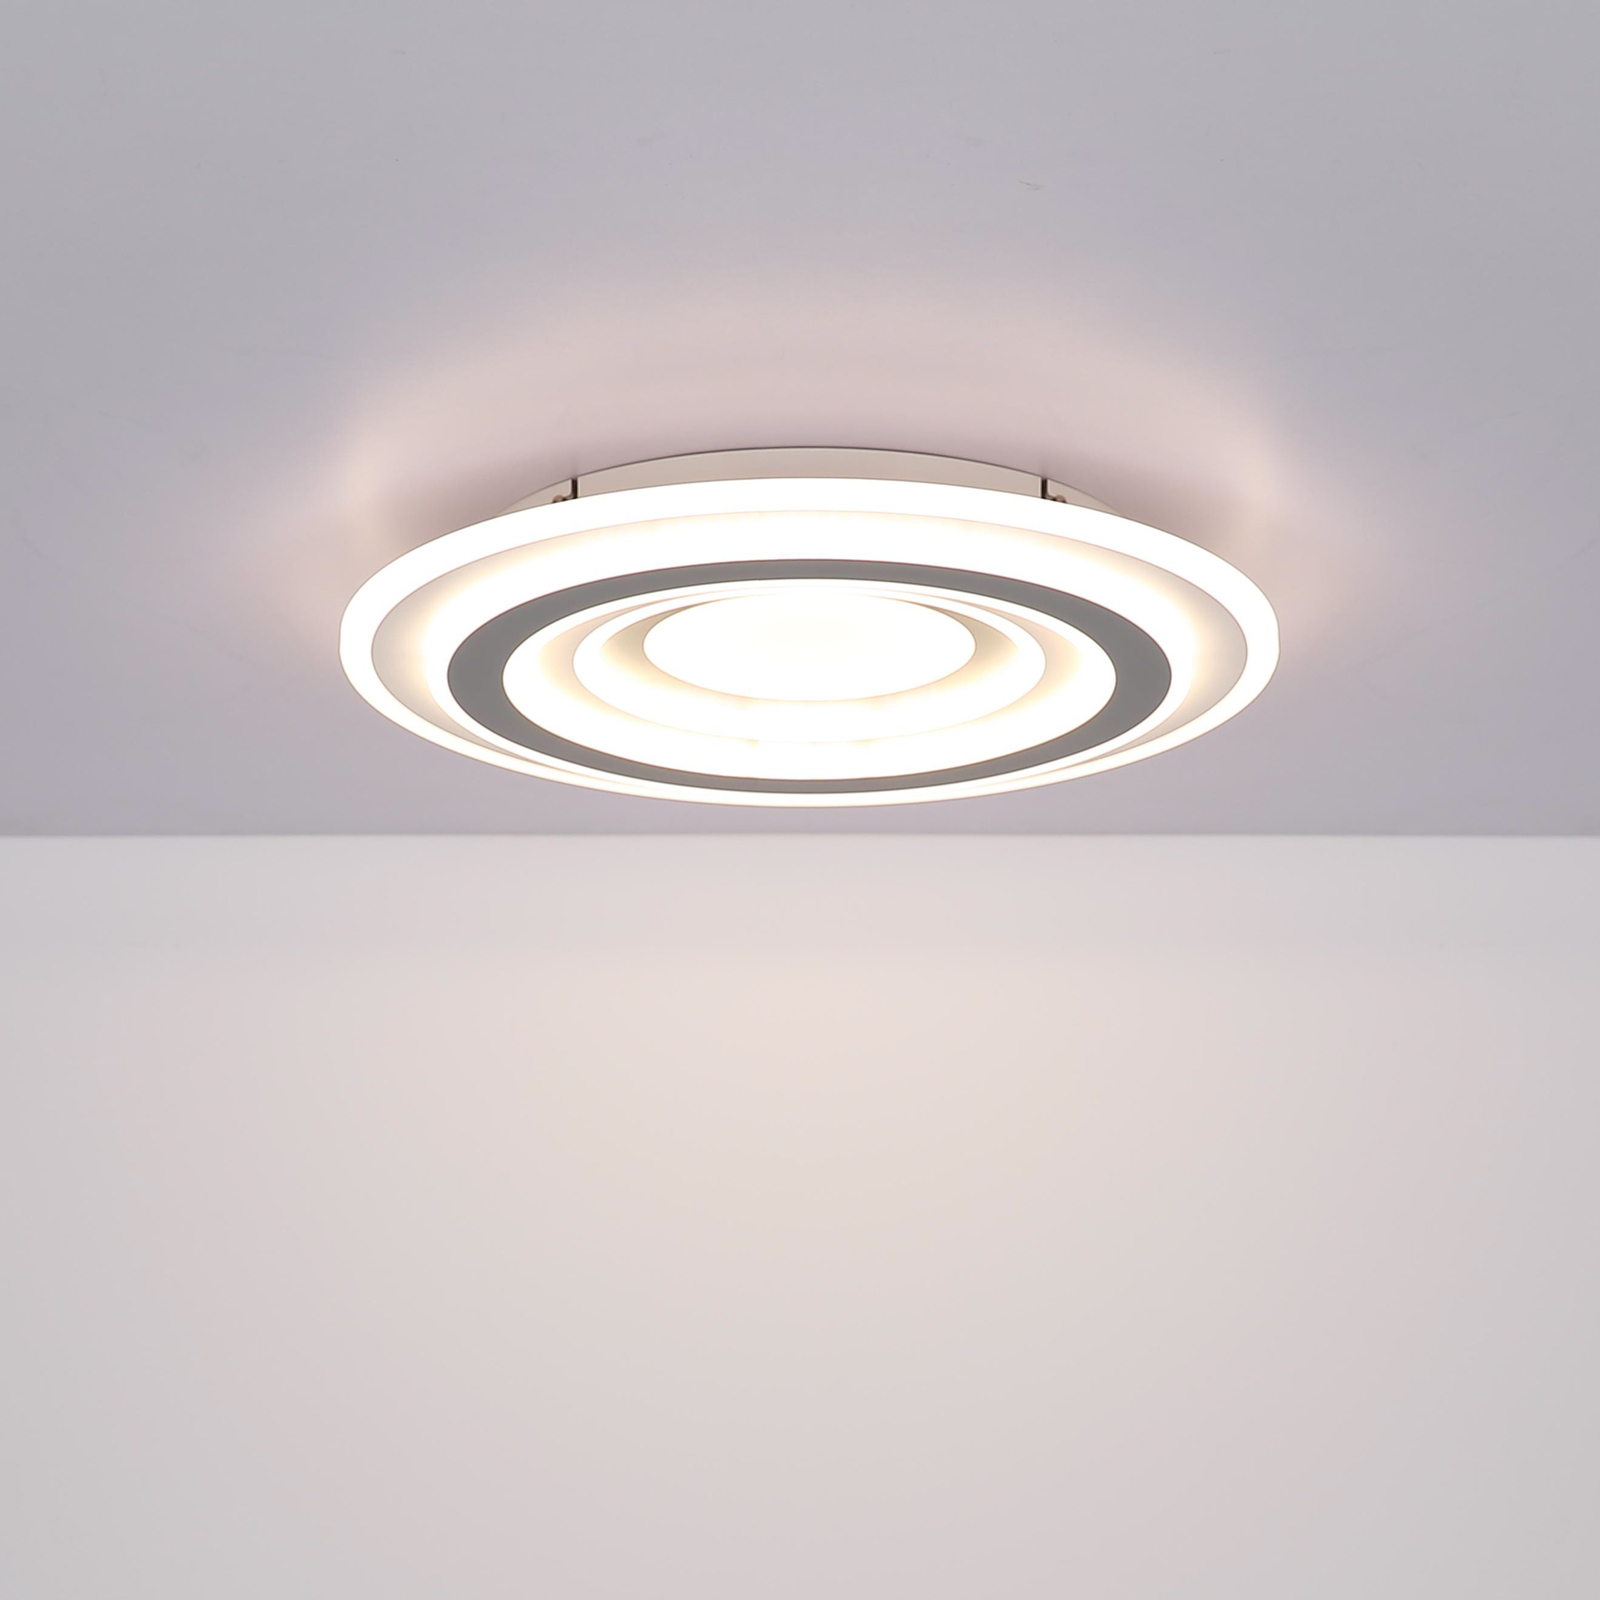 Stropní svítidlo Sabatino LED, bílá/antracitová, Ø 48 cm, CCT